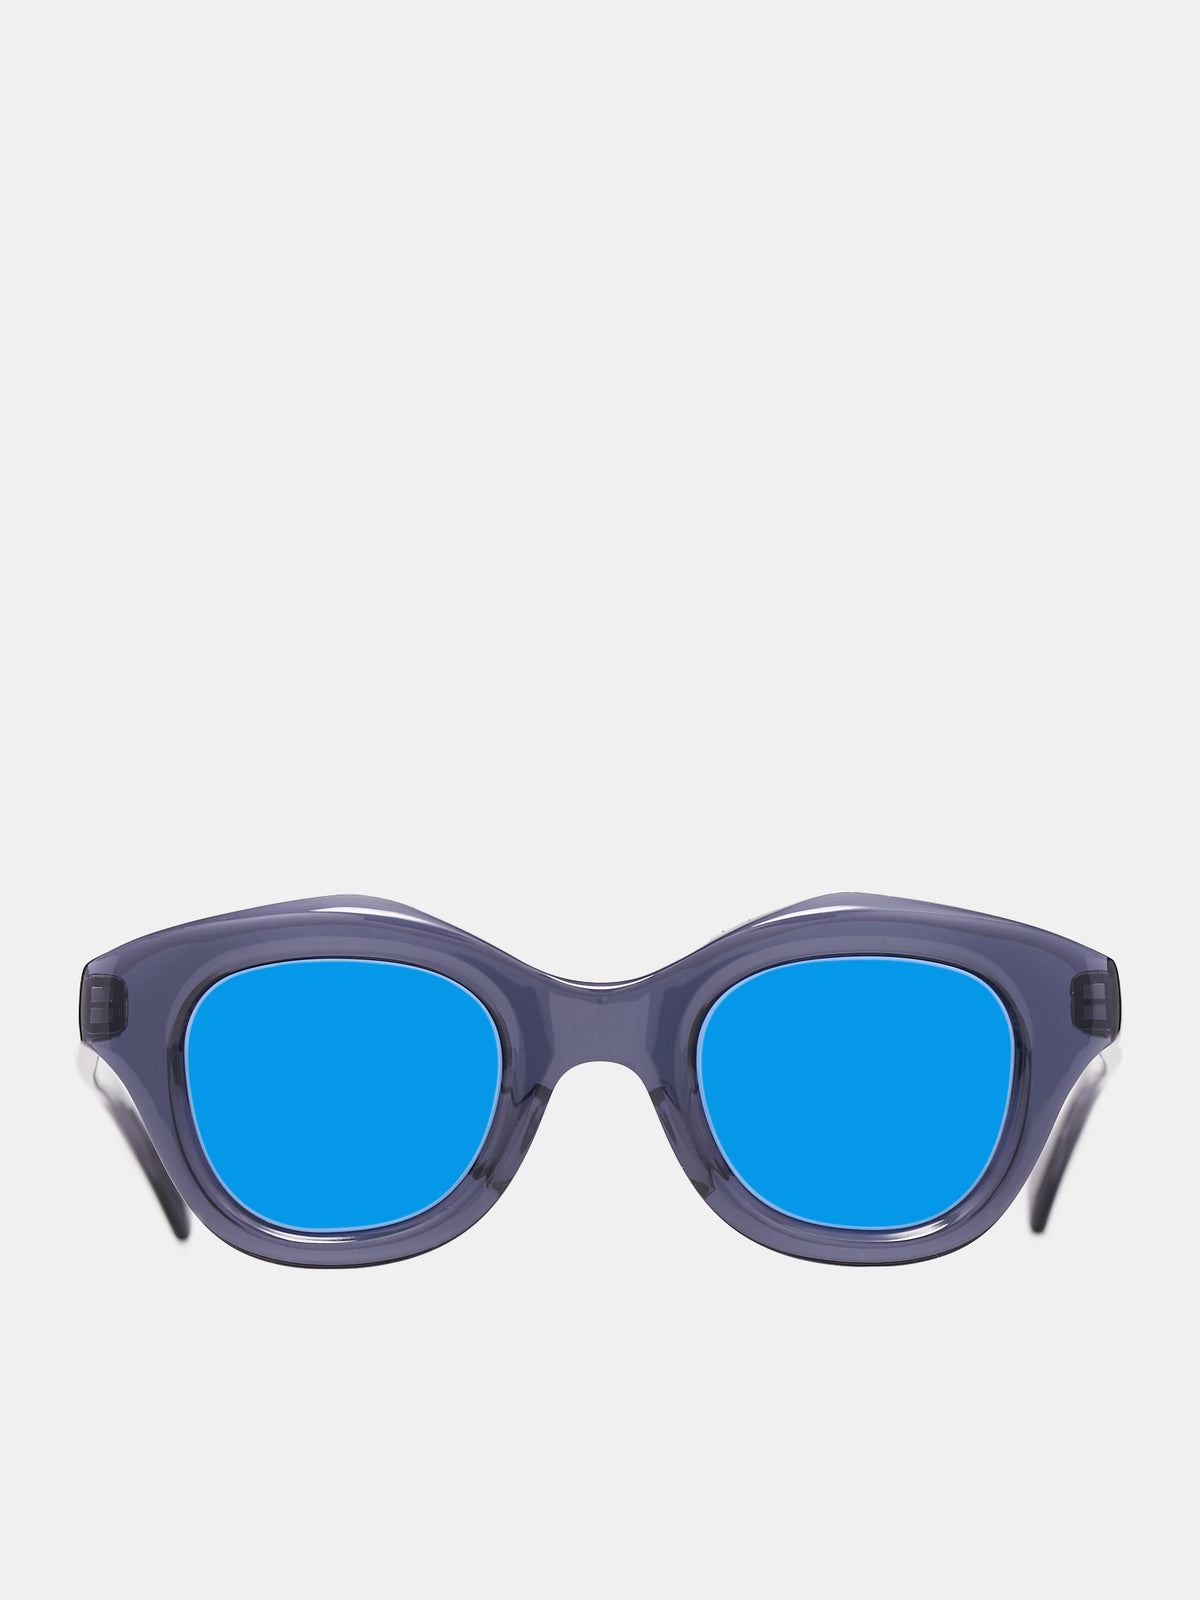 Hook Sunglasses (HOOK-CRYSTAL-GRAY-RURI-7U)